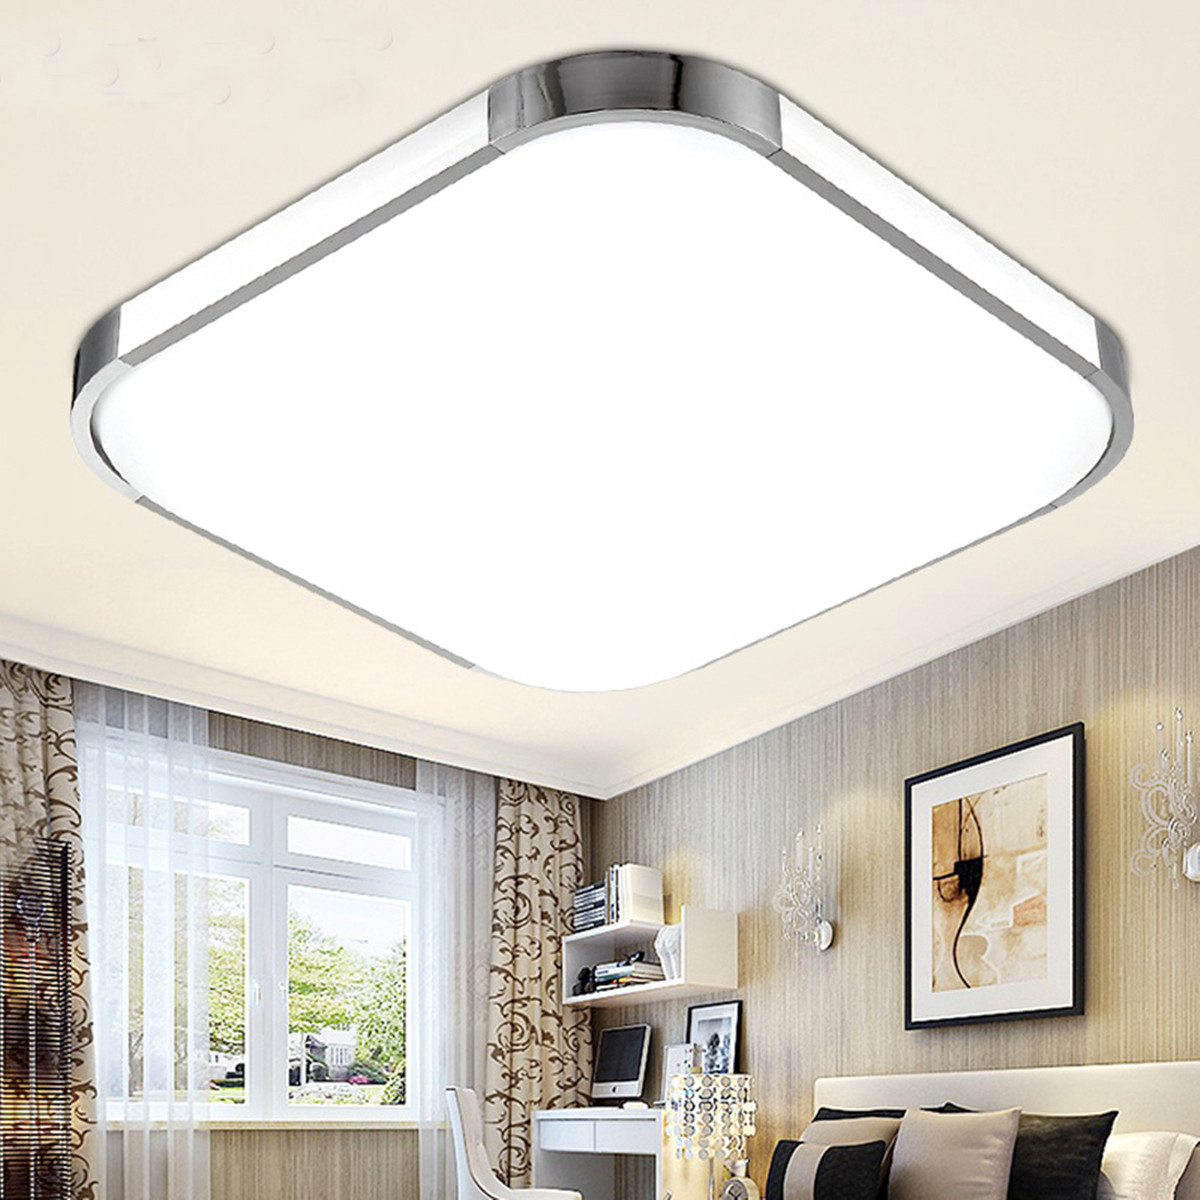 Потолочные светодиодные светильники для дома: как выбрать, разновидности, преимущества и недостатки, фото и видео обзор популярных моделей